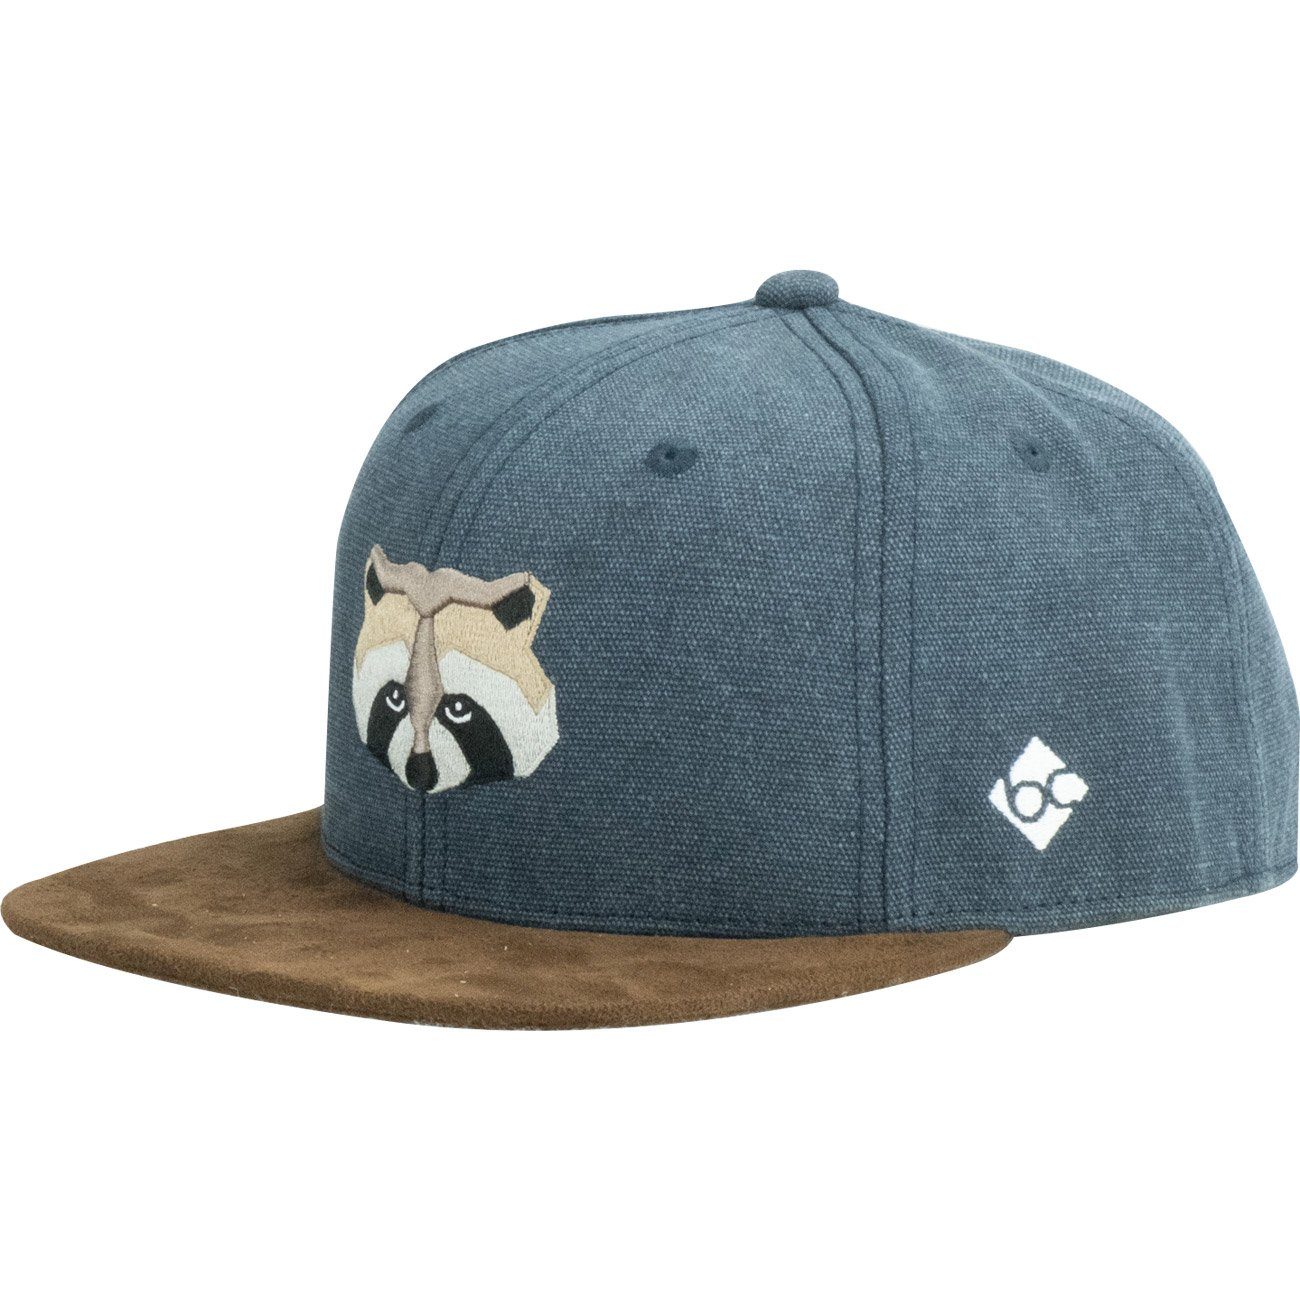 Baseball Waschbär Cap Bavarian Caps